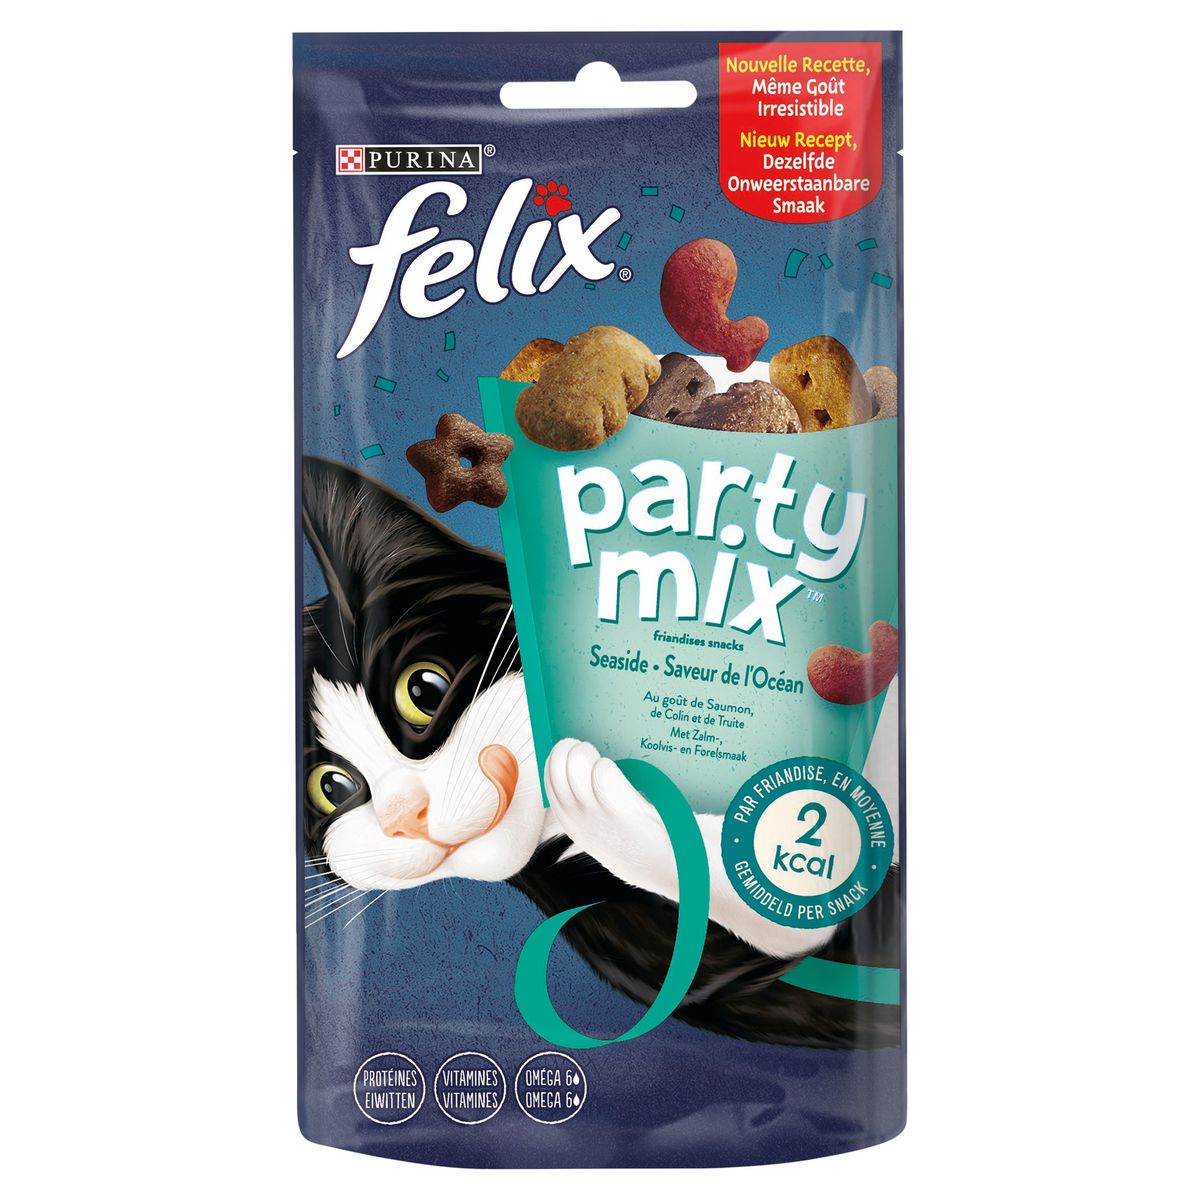 Felix Party Mix Friandises Saveur de l'Océan au Goût de Saumon, de Colin et de Truite 60 g